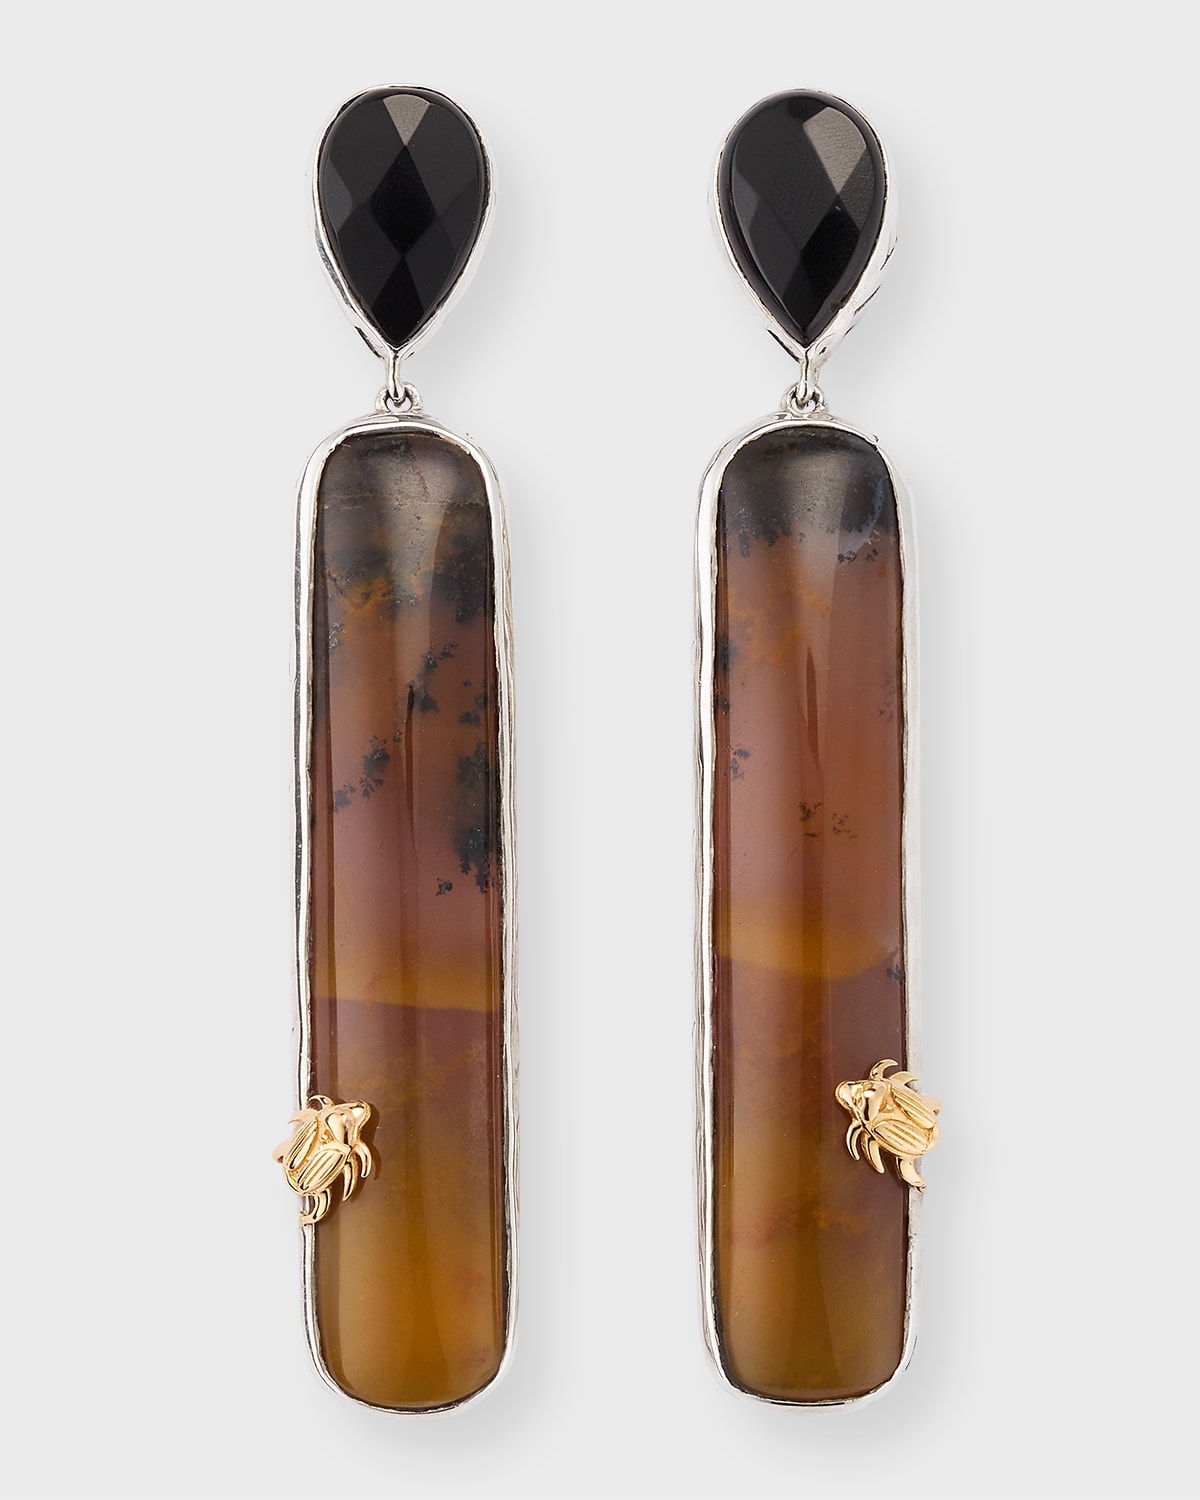 Black Onyx and Dendritic Agate Earrings